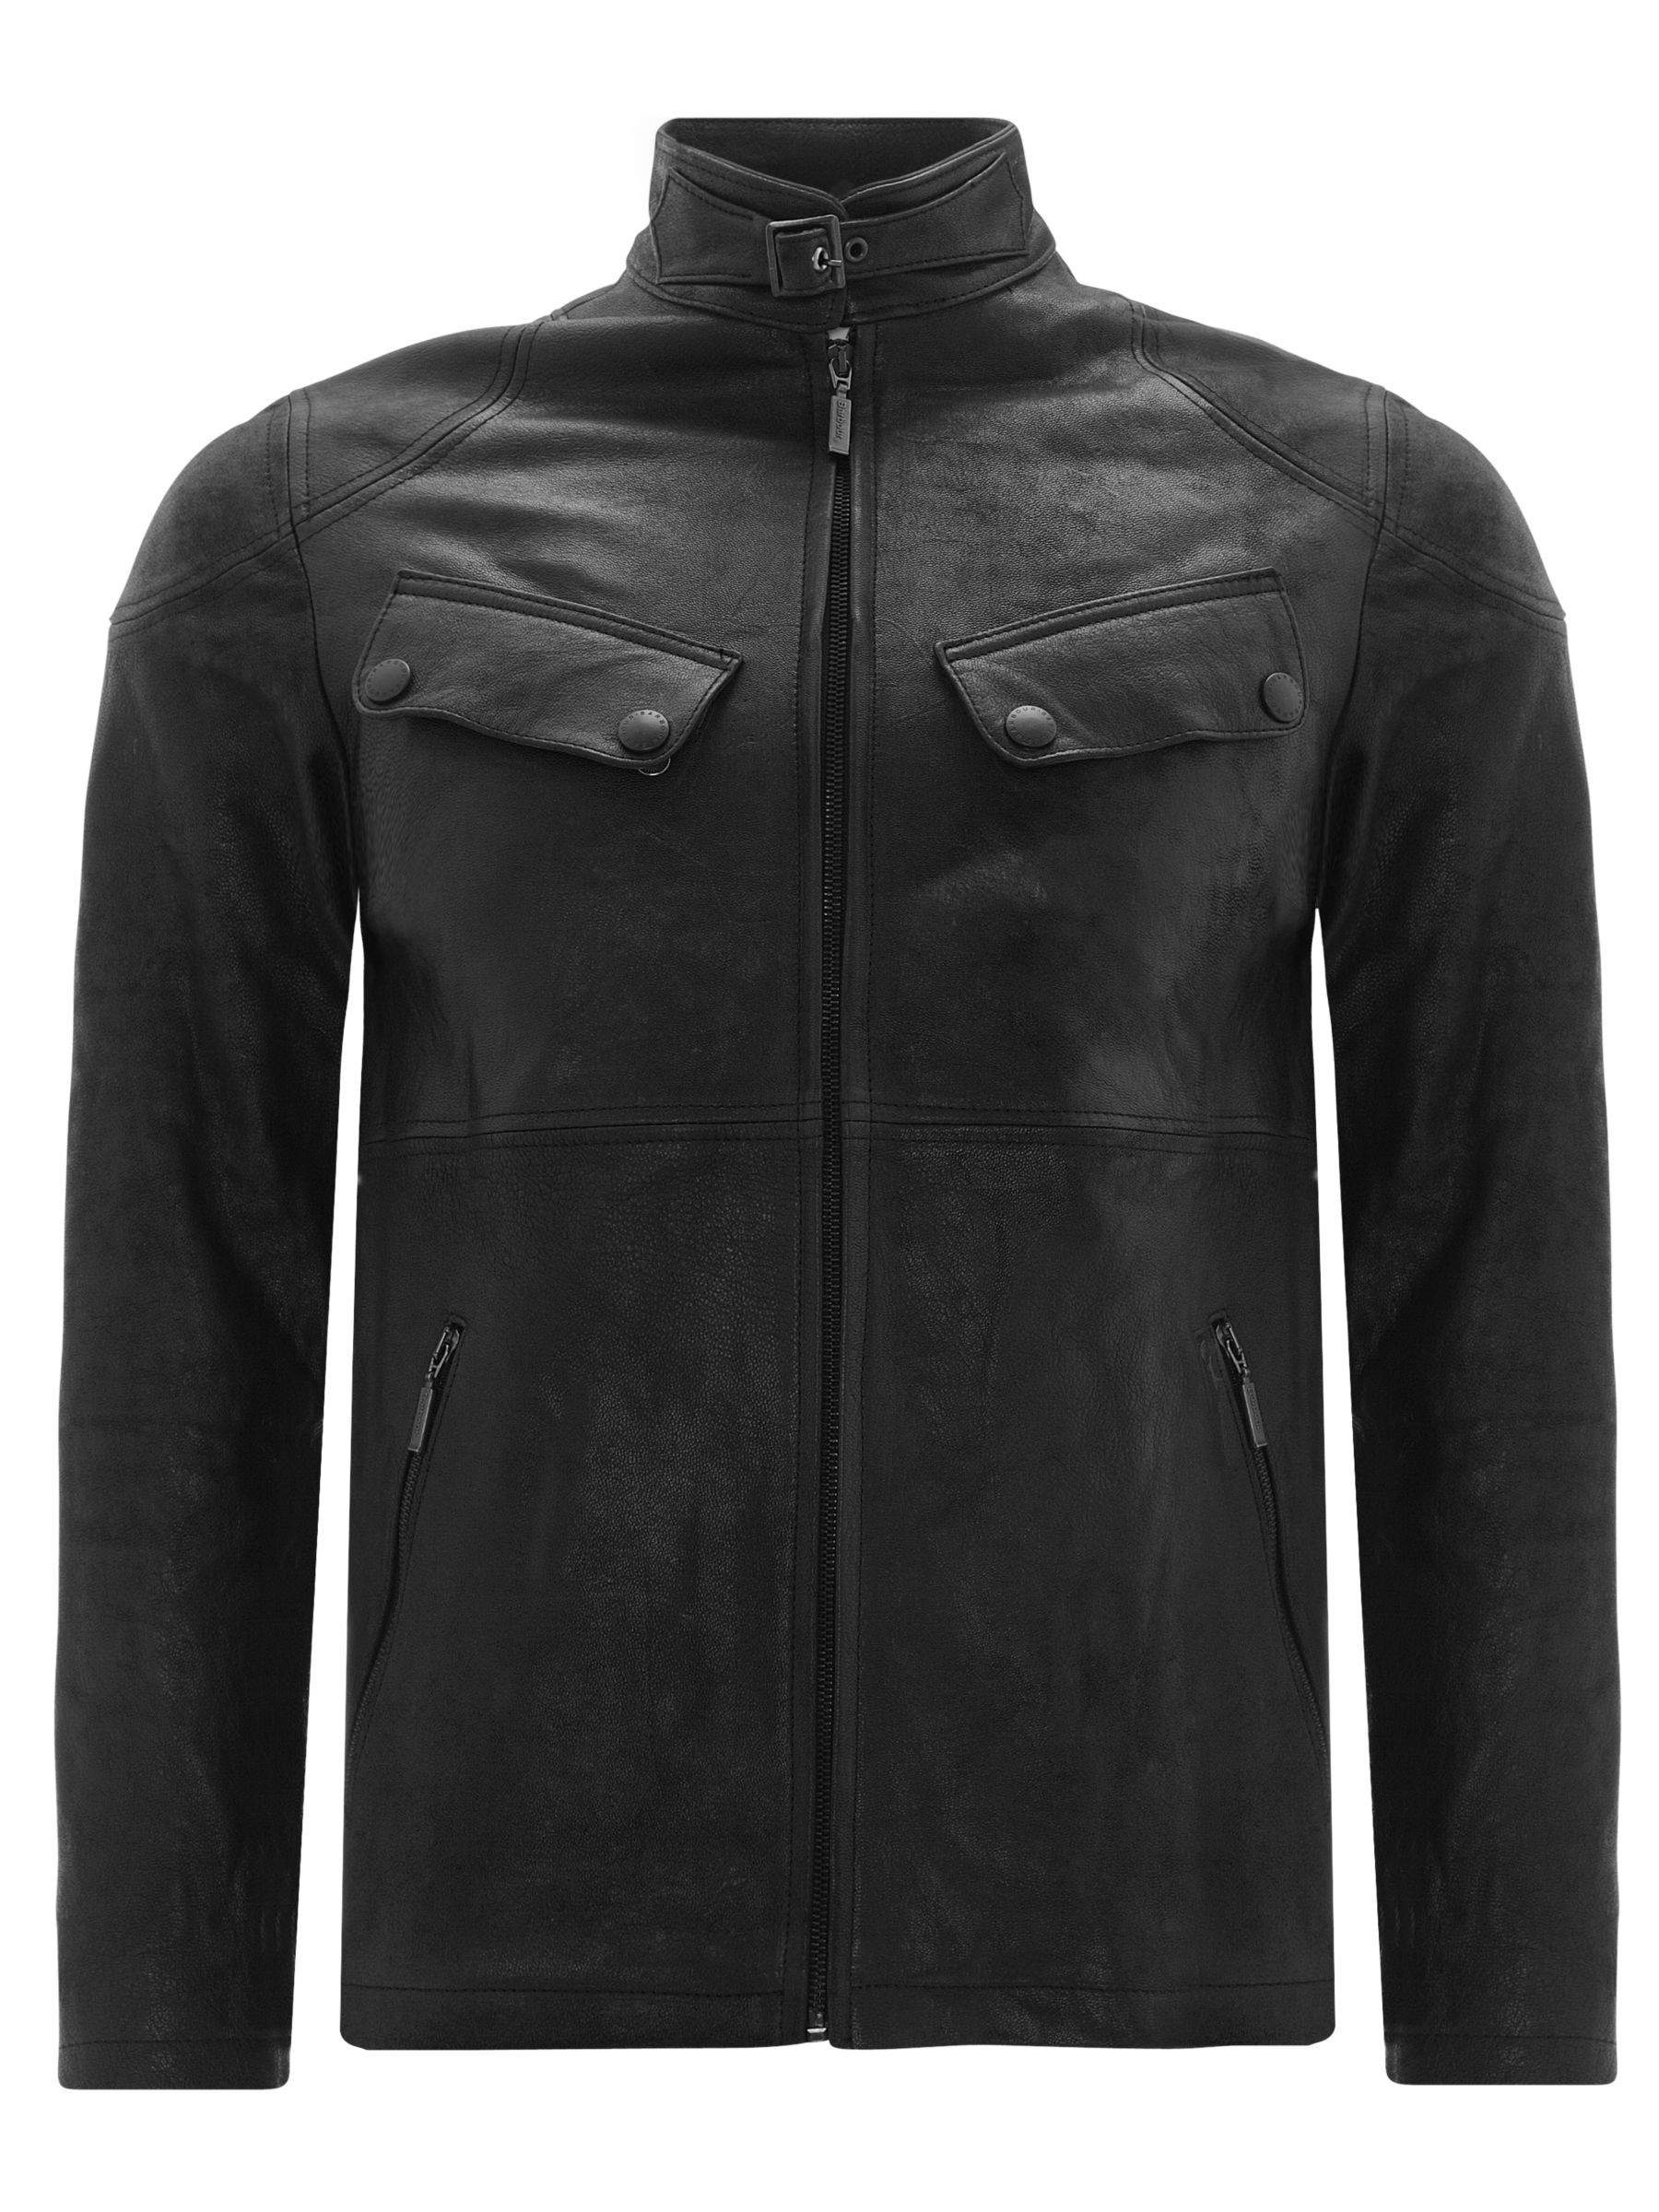 barbour black leather jacket